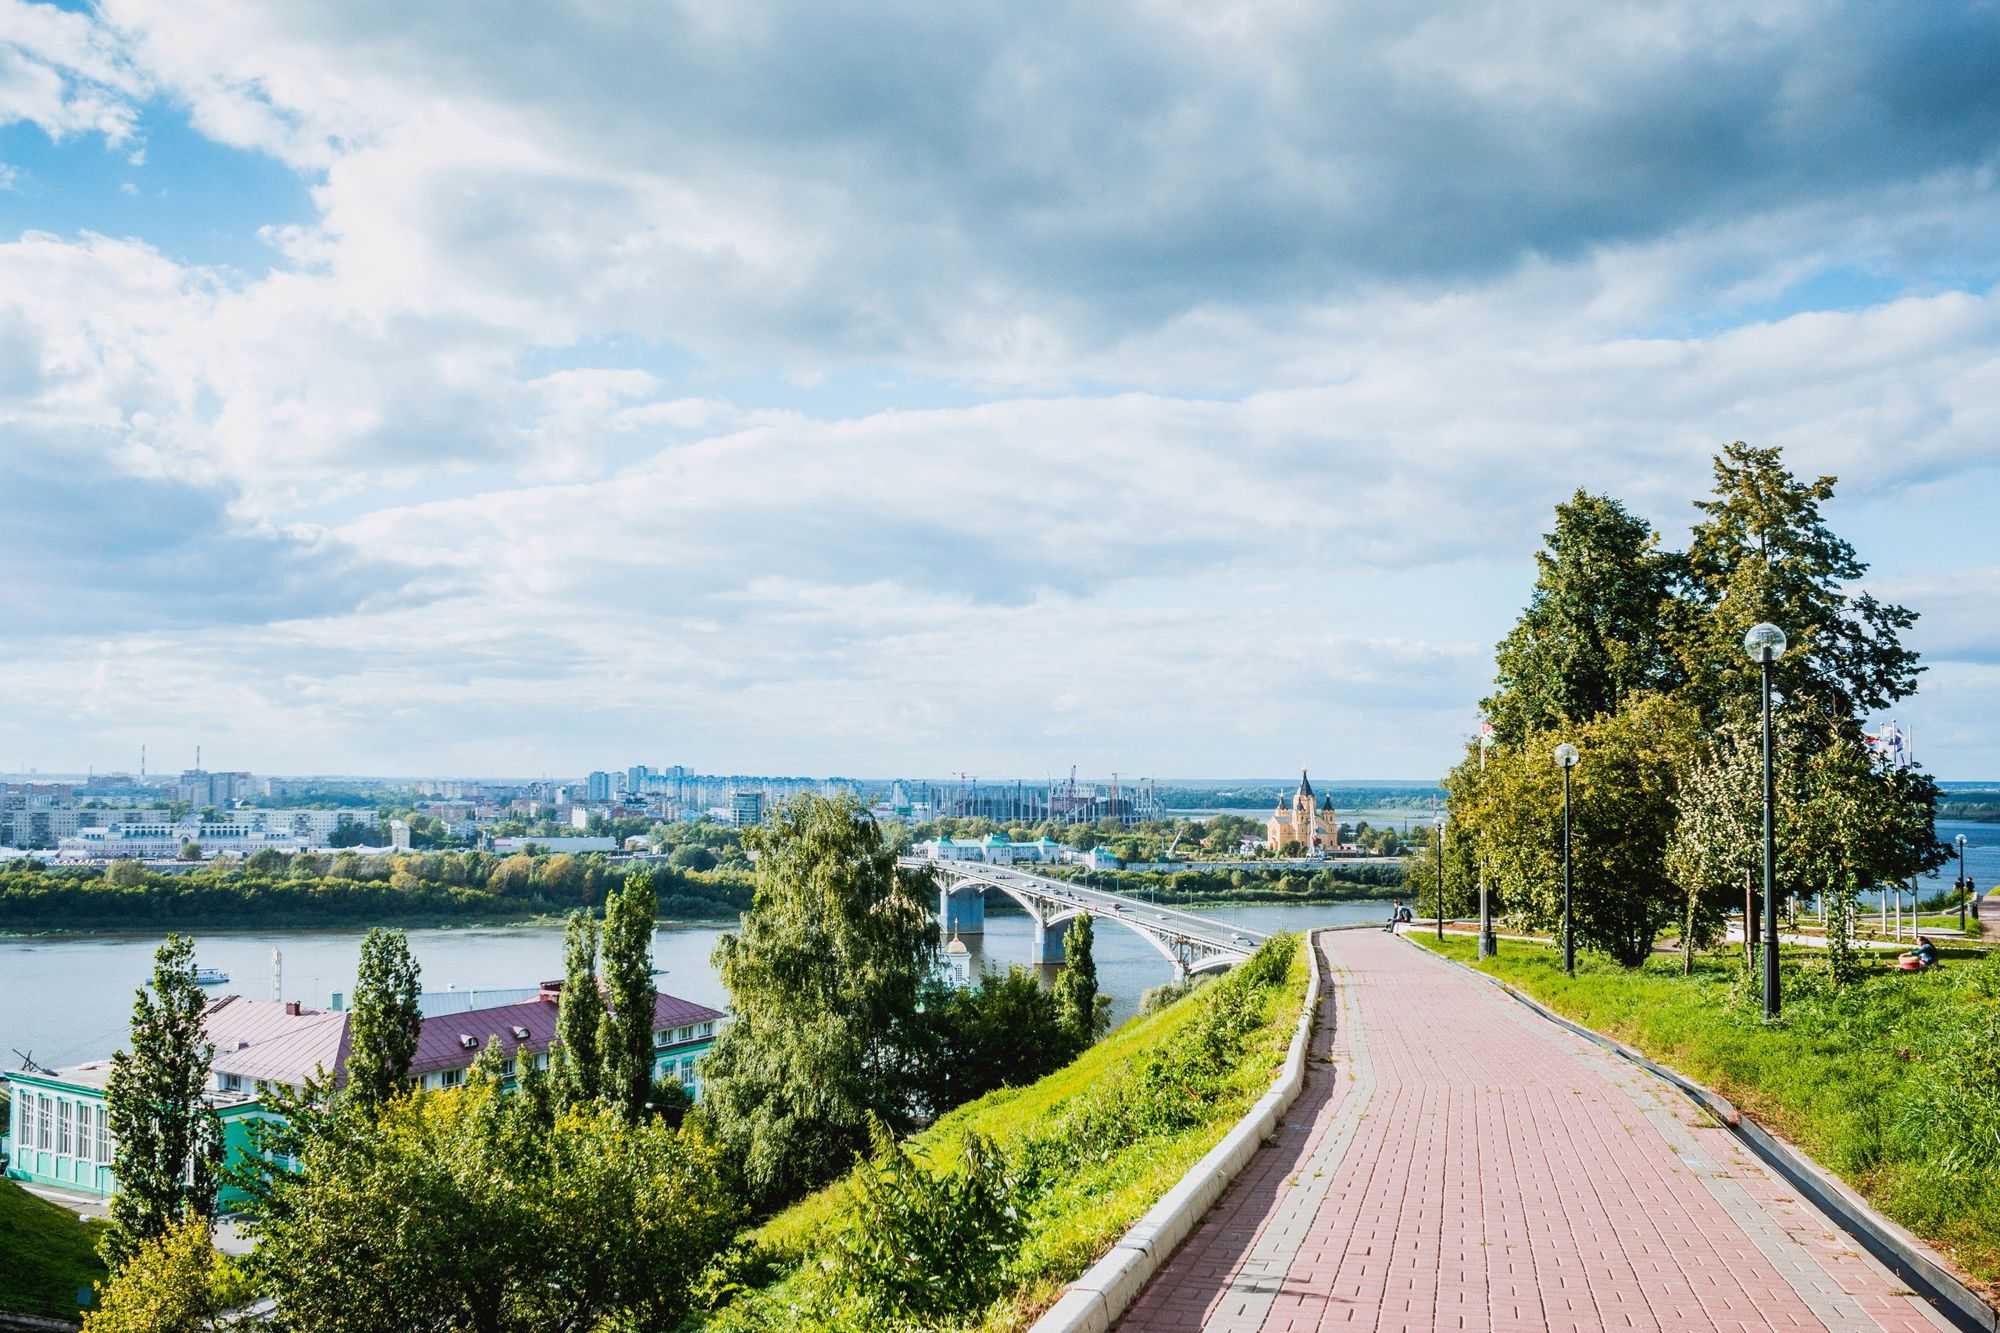 Нижний новгород городской канал